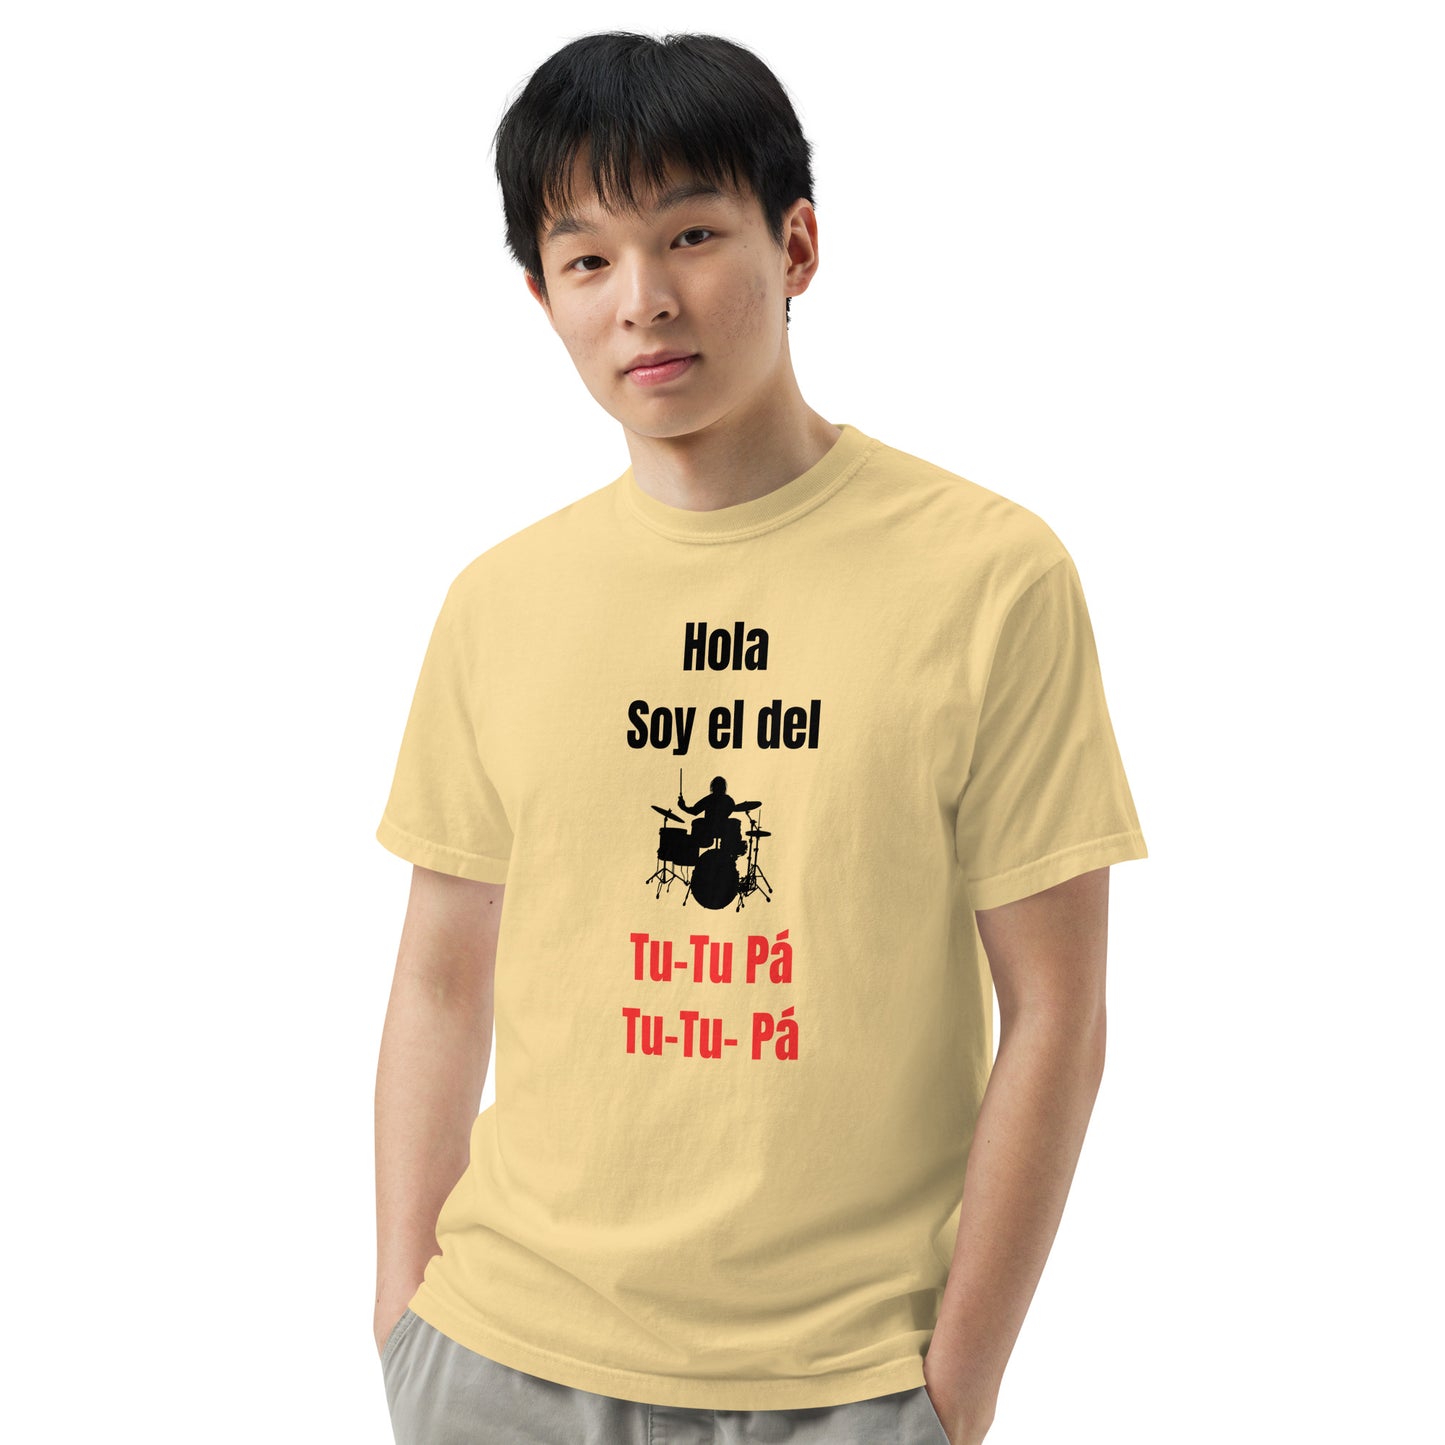 Camiseta gruesa teñida unisex